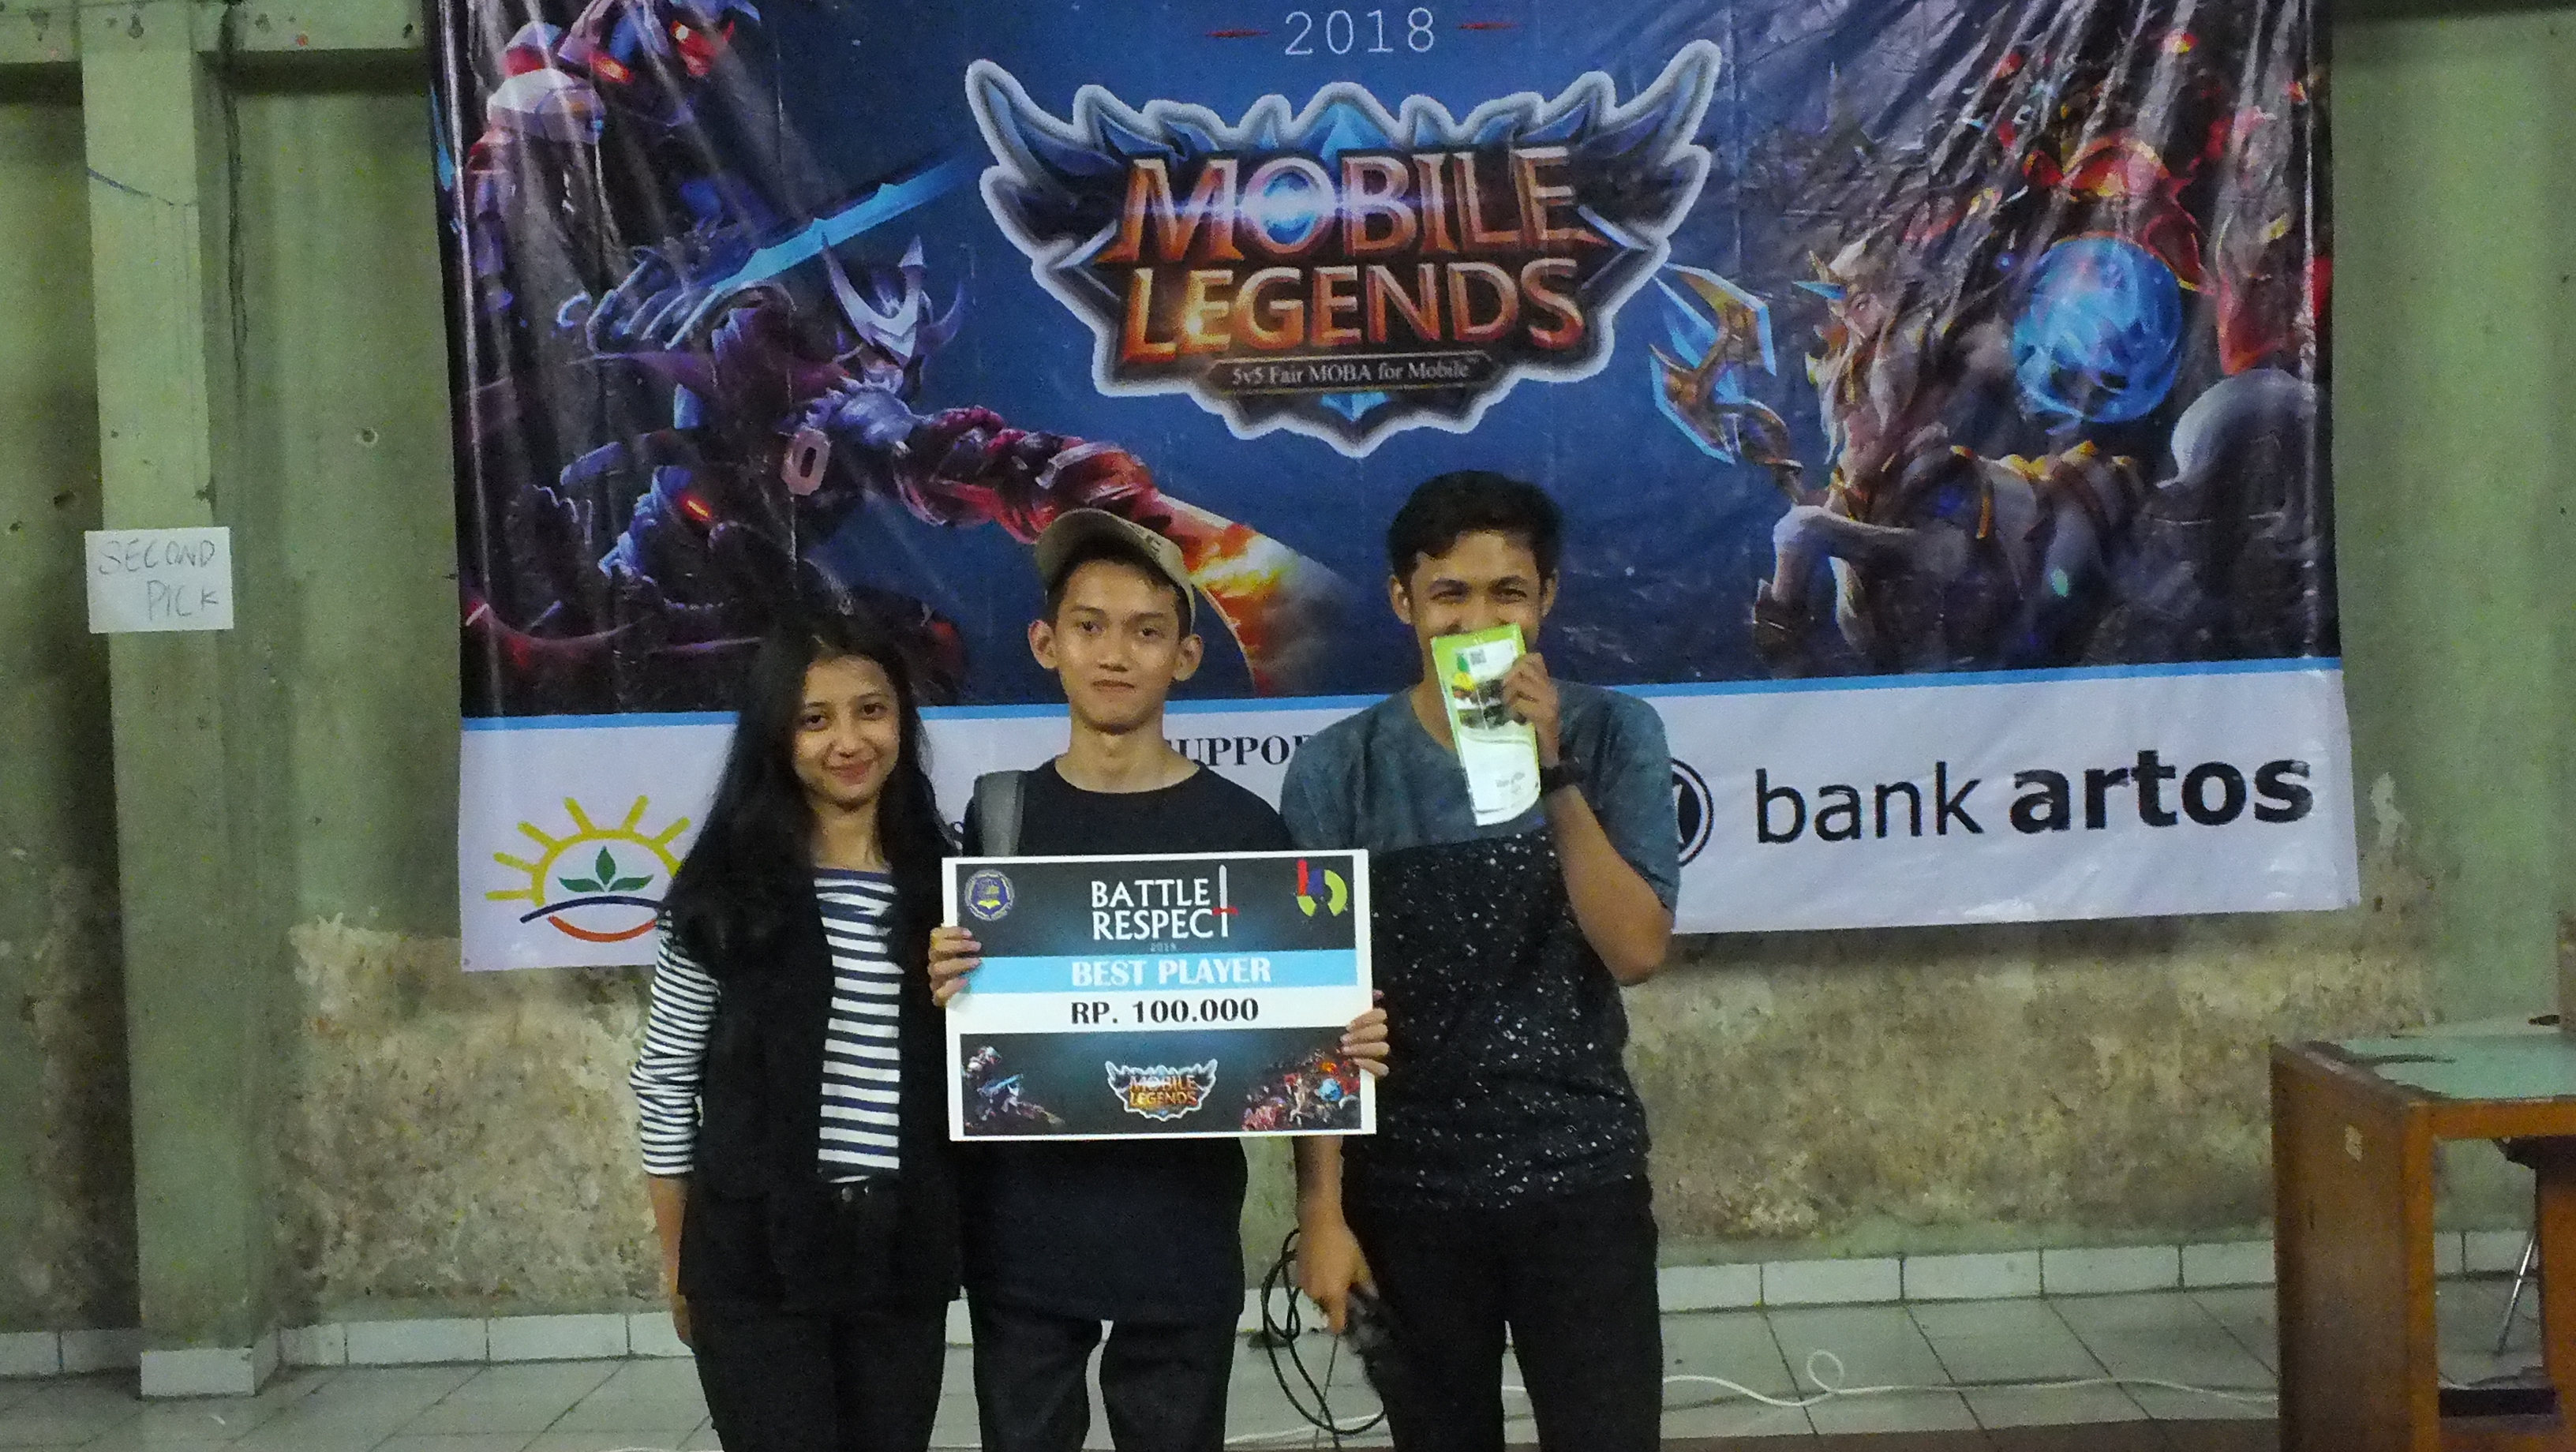 Tournament Mobile Legends Battle Respect 2018